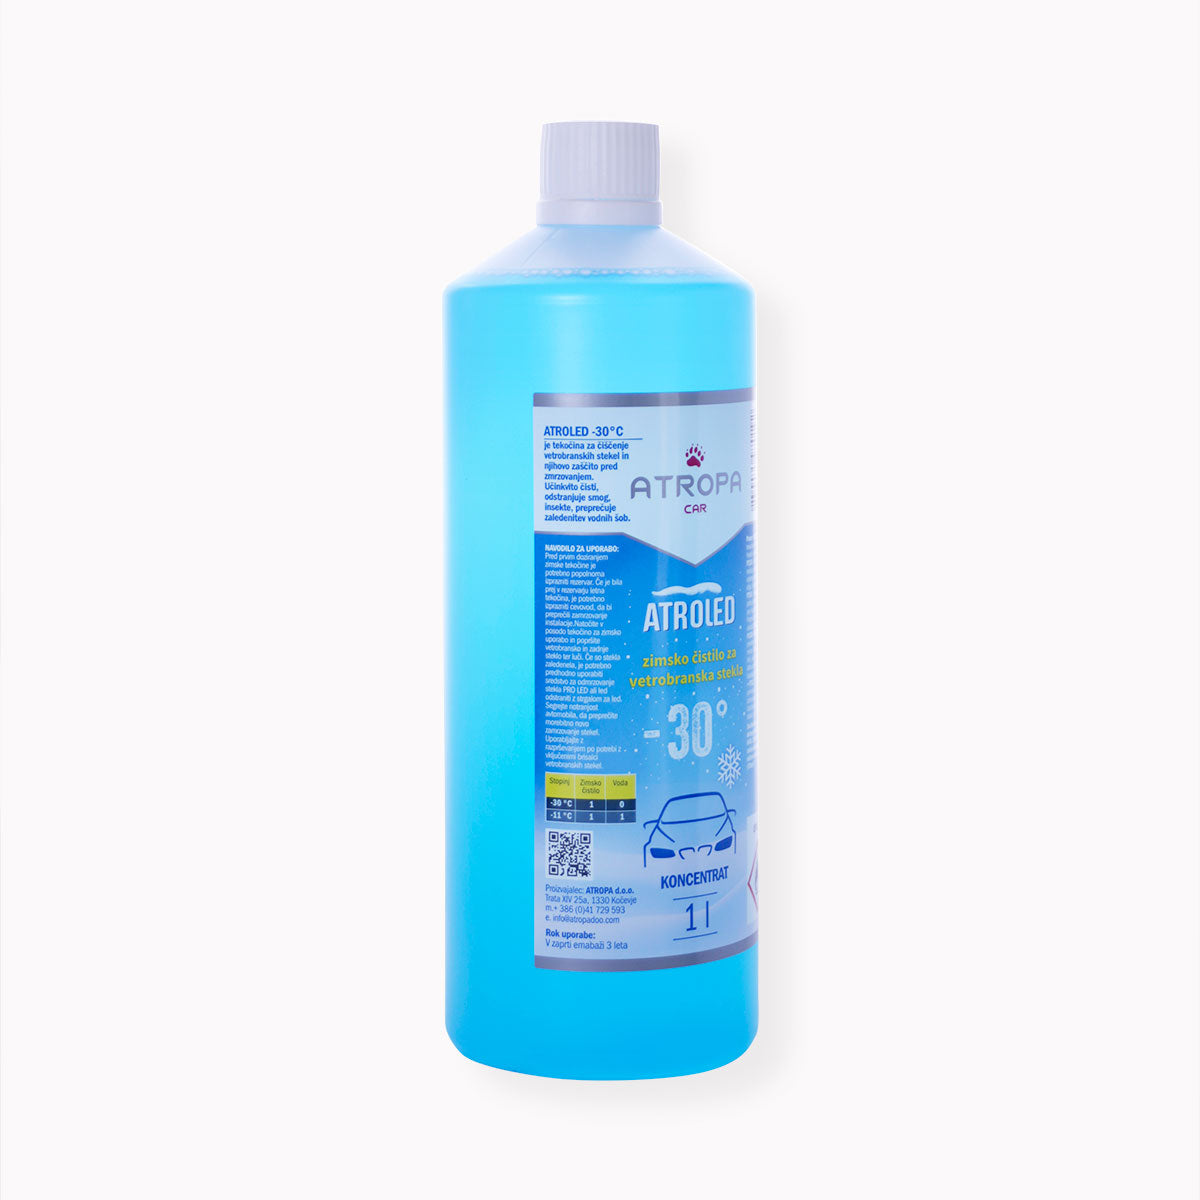 ATROLED zimska tekočina za vetrobransko steklo 1l do -30 °C modre barve v praktični embalaži. Zimska tekočina za vetrobransko steklo je proizvedena v Sloveniji.